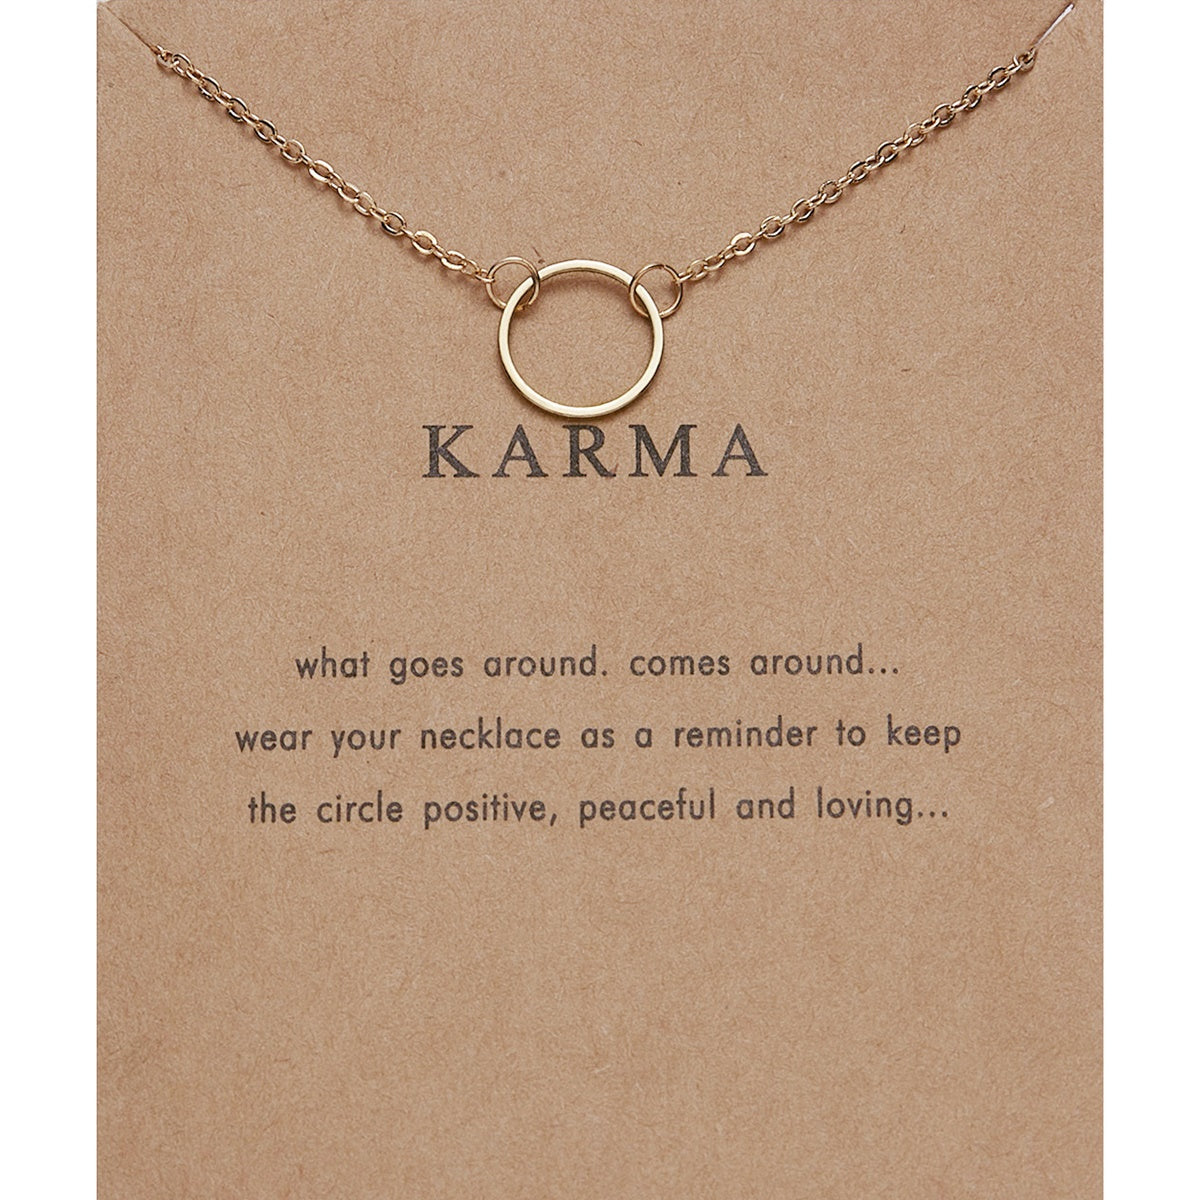 Karma Necklace